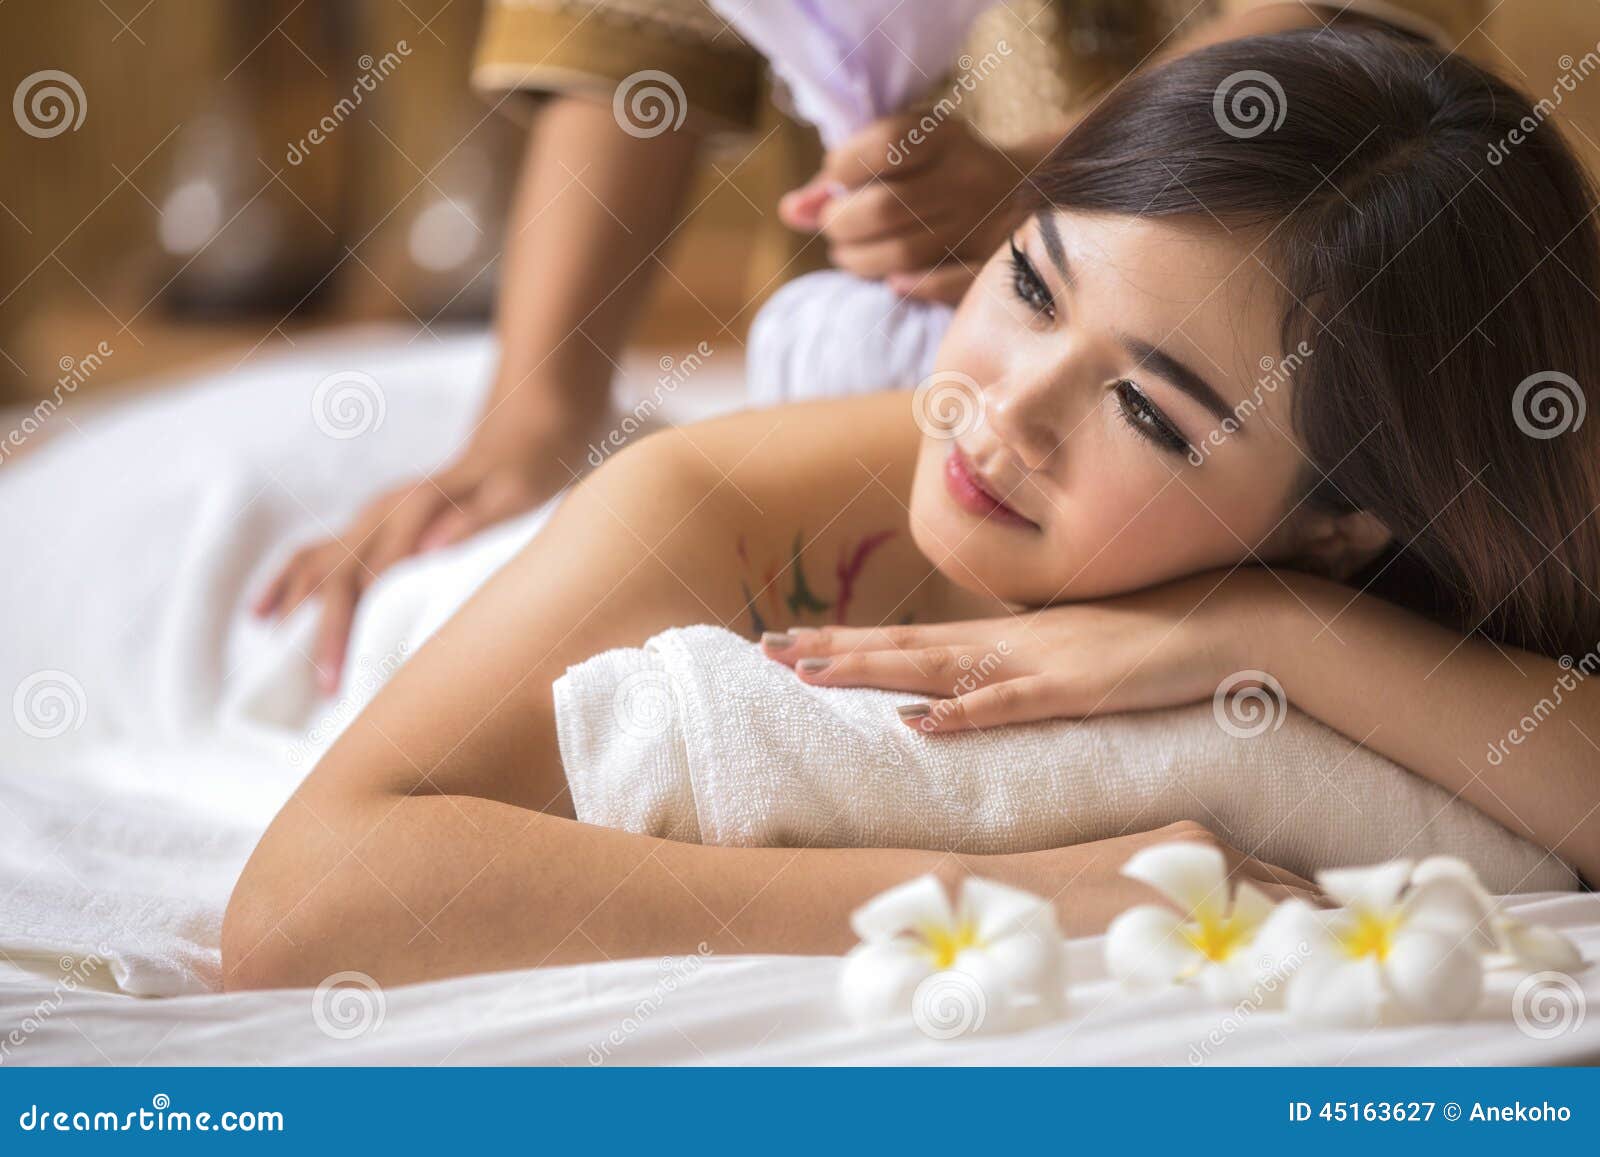 masseur doing massage on asia woman body